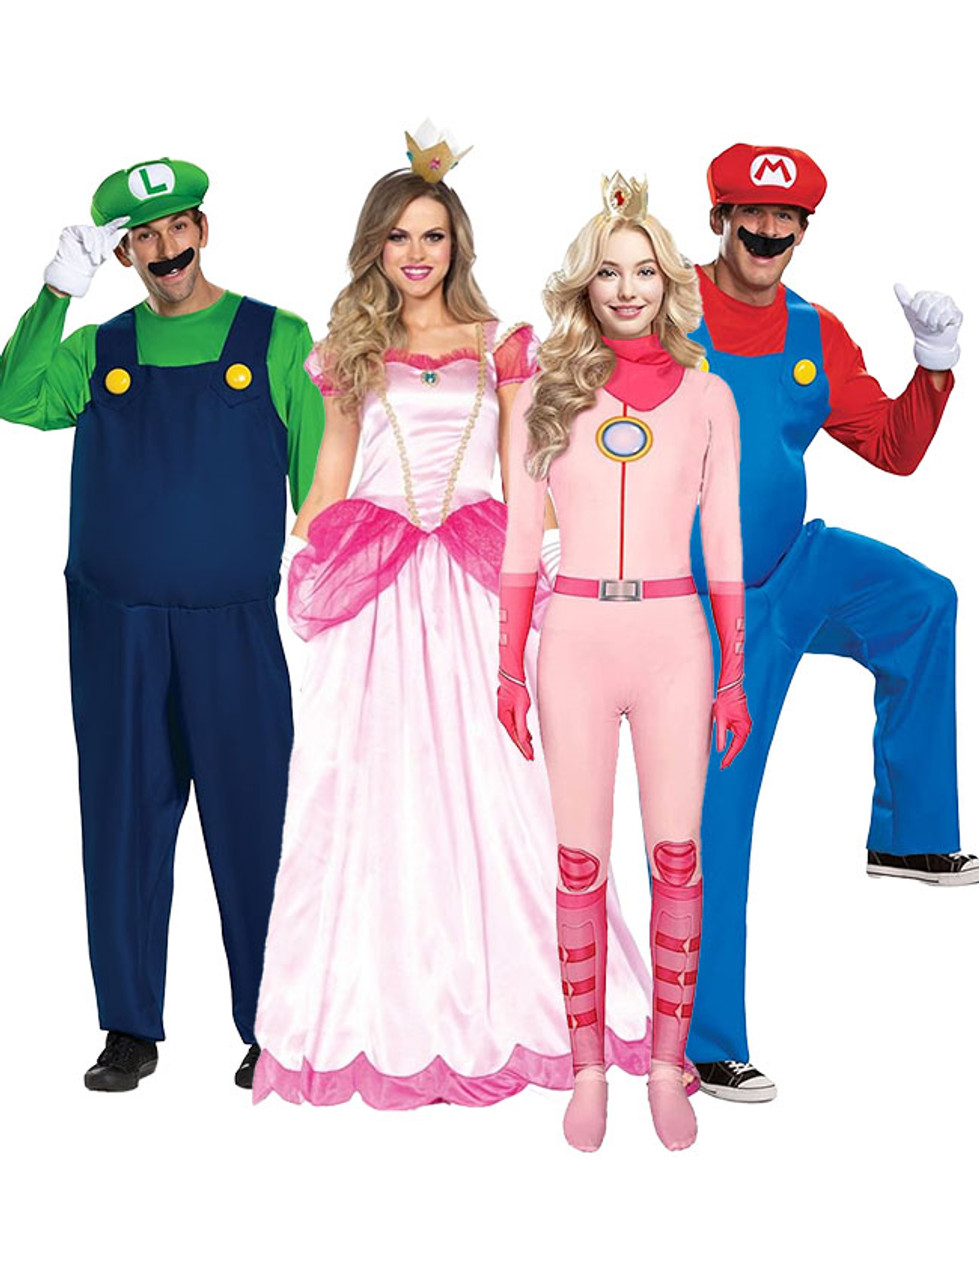 Costume de Super Mario et Luigi pour enfant, adulte, homme et